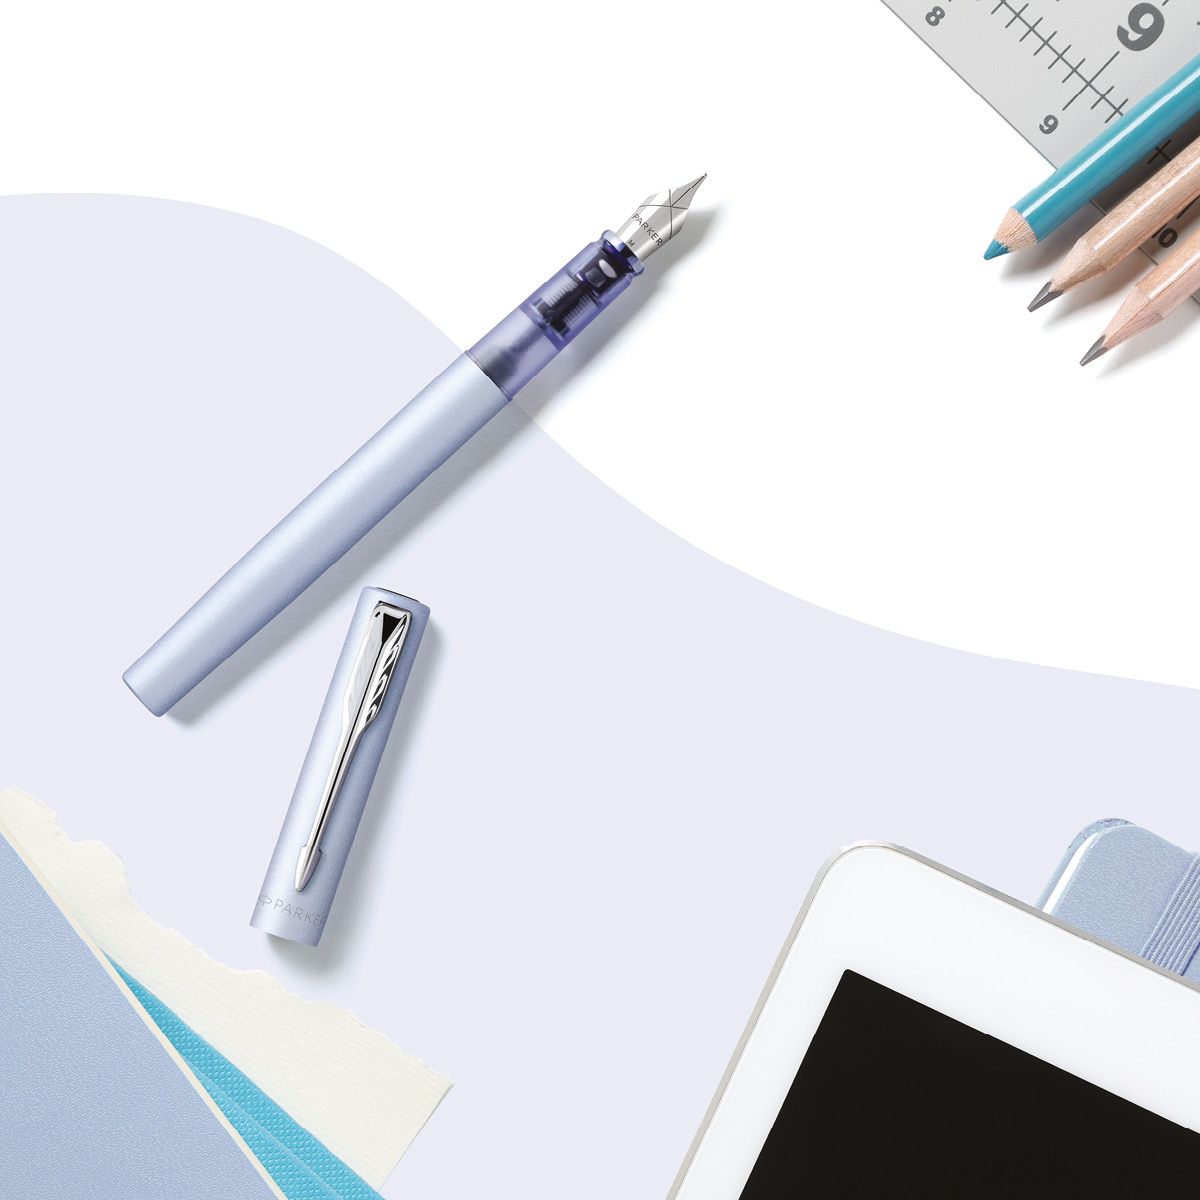 2159745:Parker stylo plume Vector XL, moyenne, en boîte-cadeau, Silver blue  (argent/bleu)